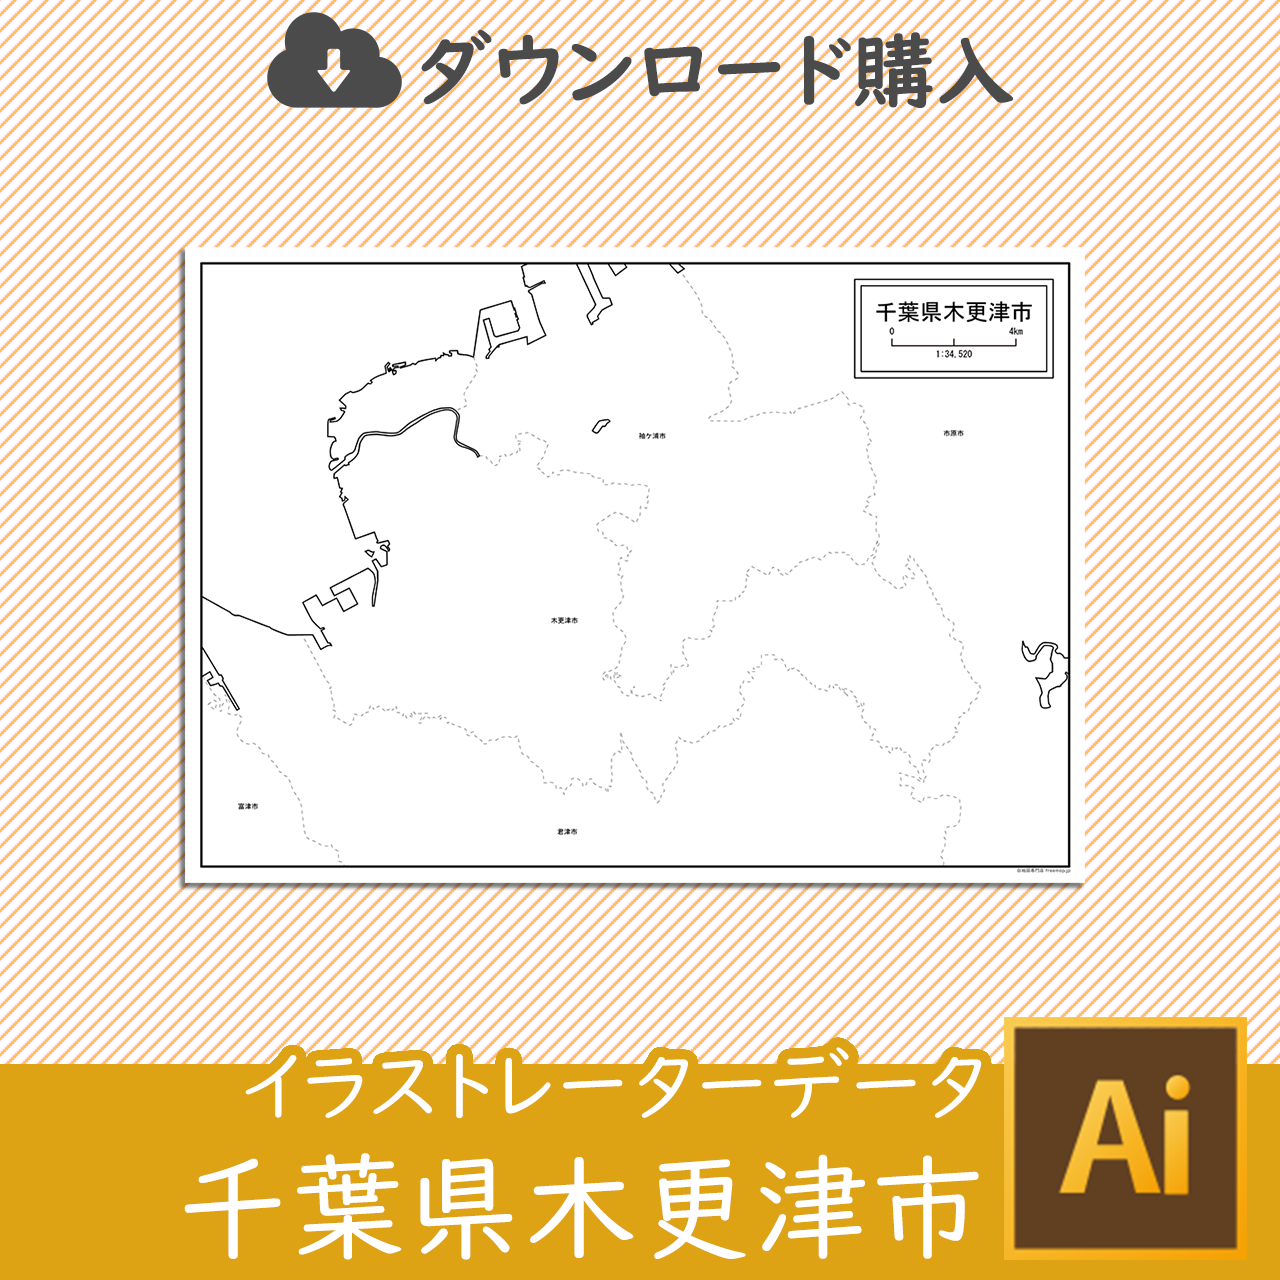 木更津市のaiデータのサムネイル画像